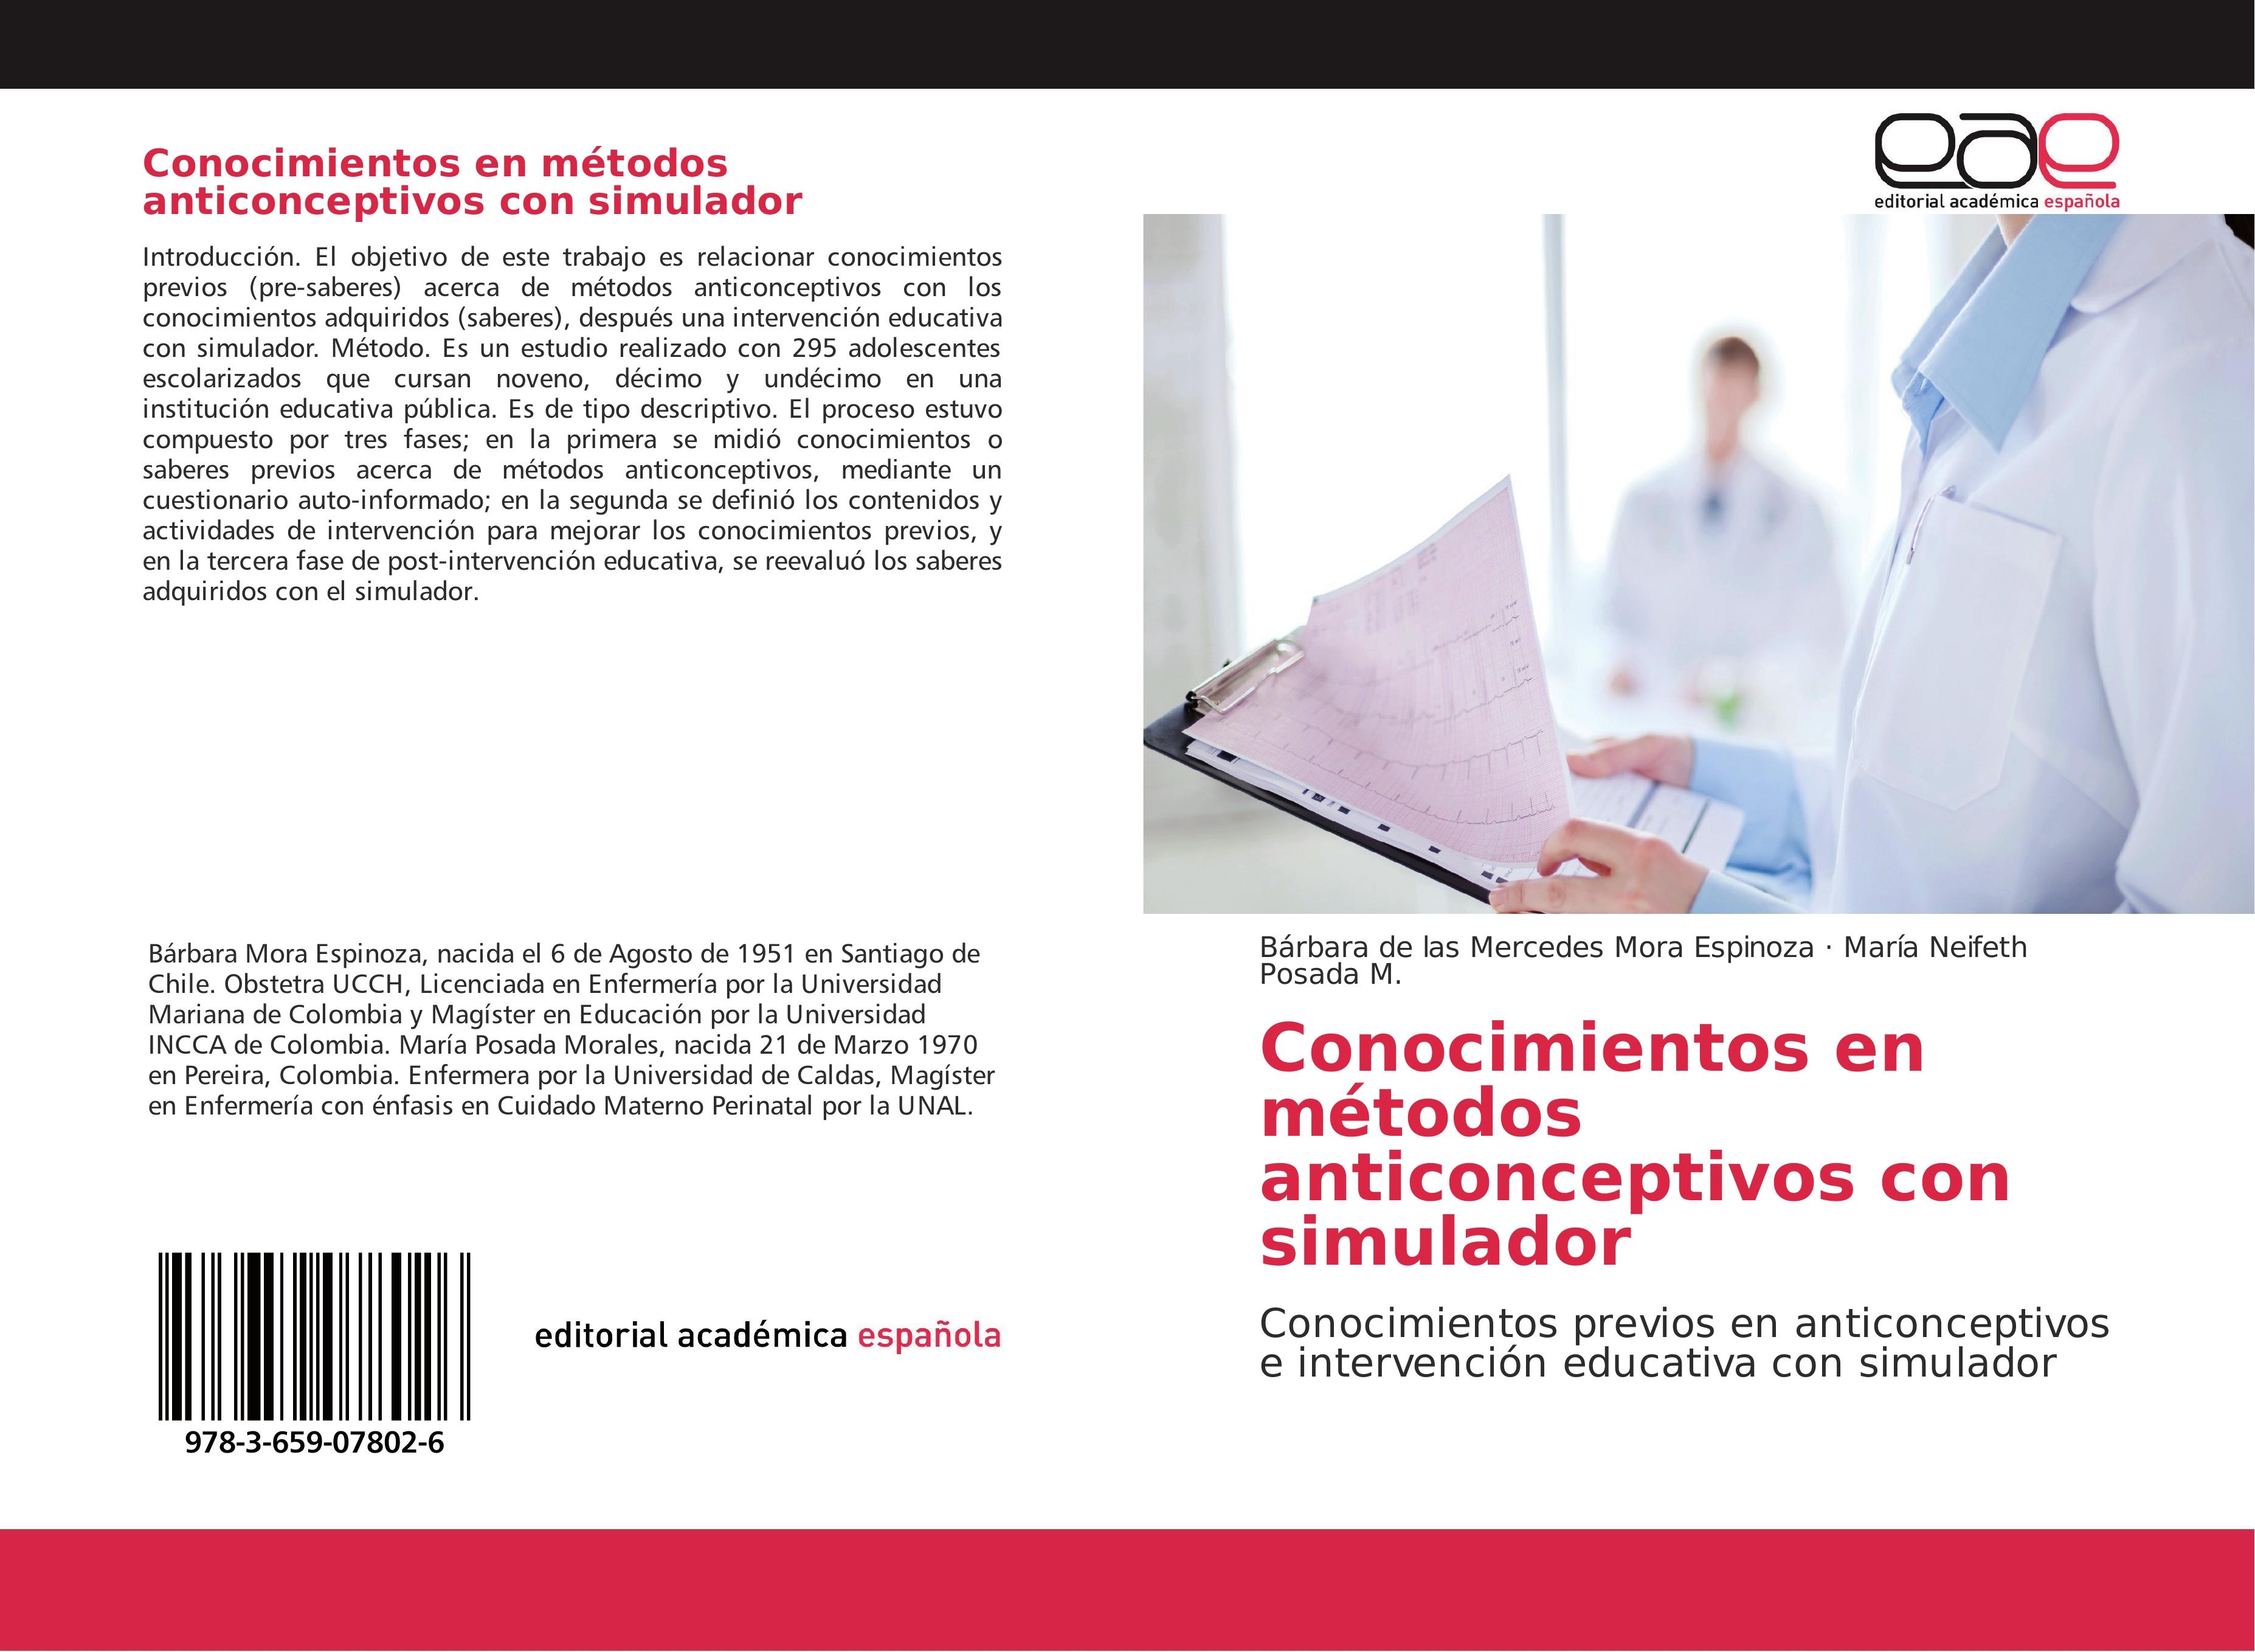 Conocimientos en métodos anticonceptivos con simulador - Bárbara de las Mercedes Mora Espinoza|María Neifeth Posada M.